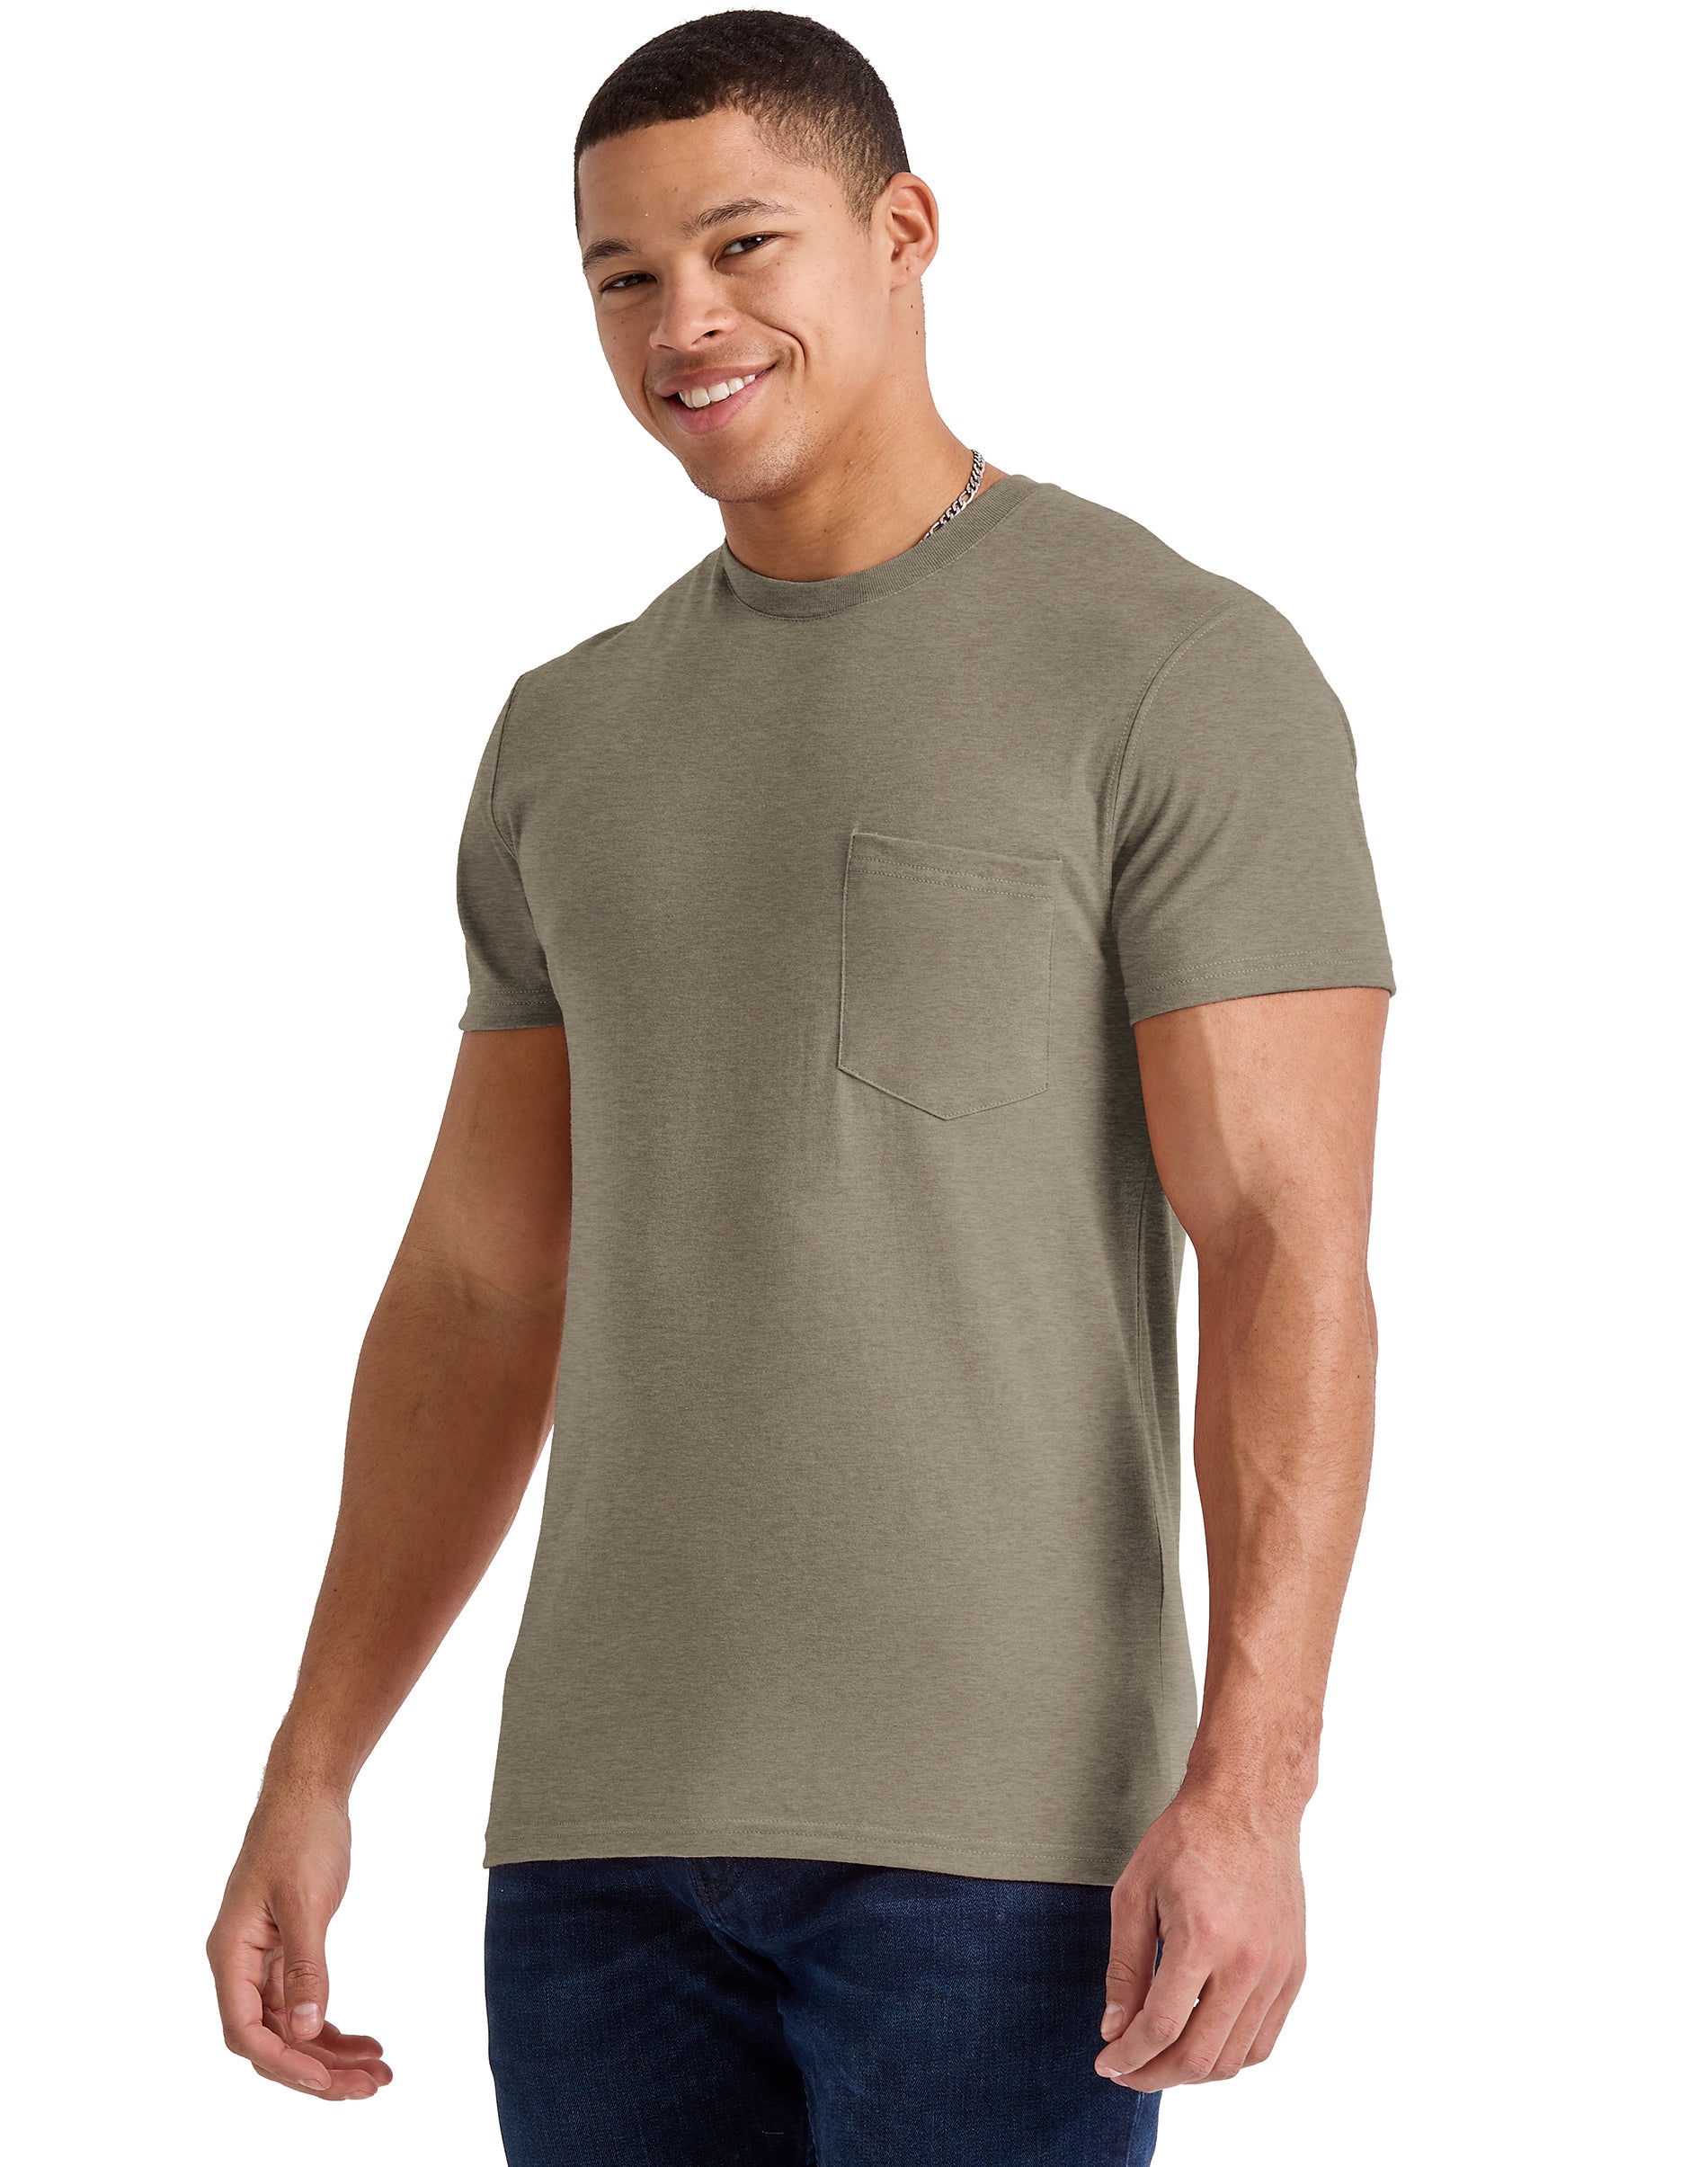 Hanes Originals Mens Cotton Pocket T-Shirt